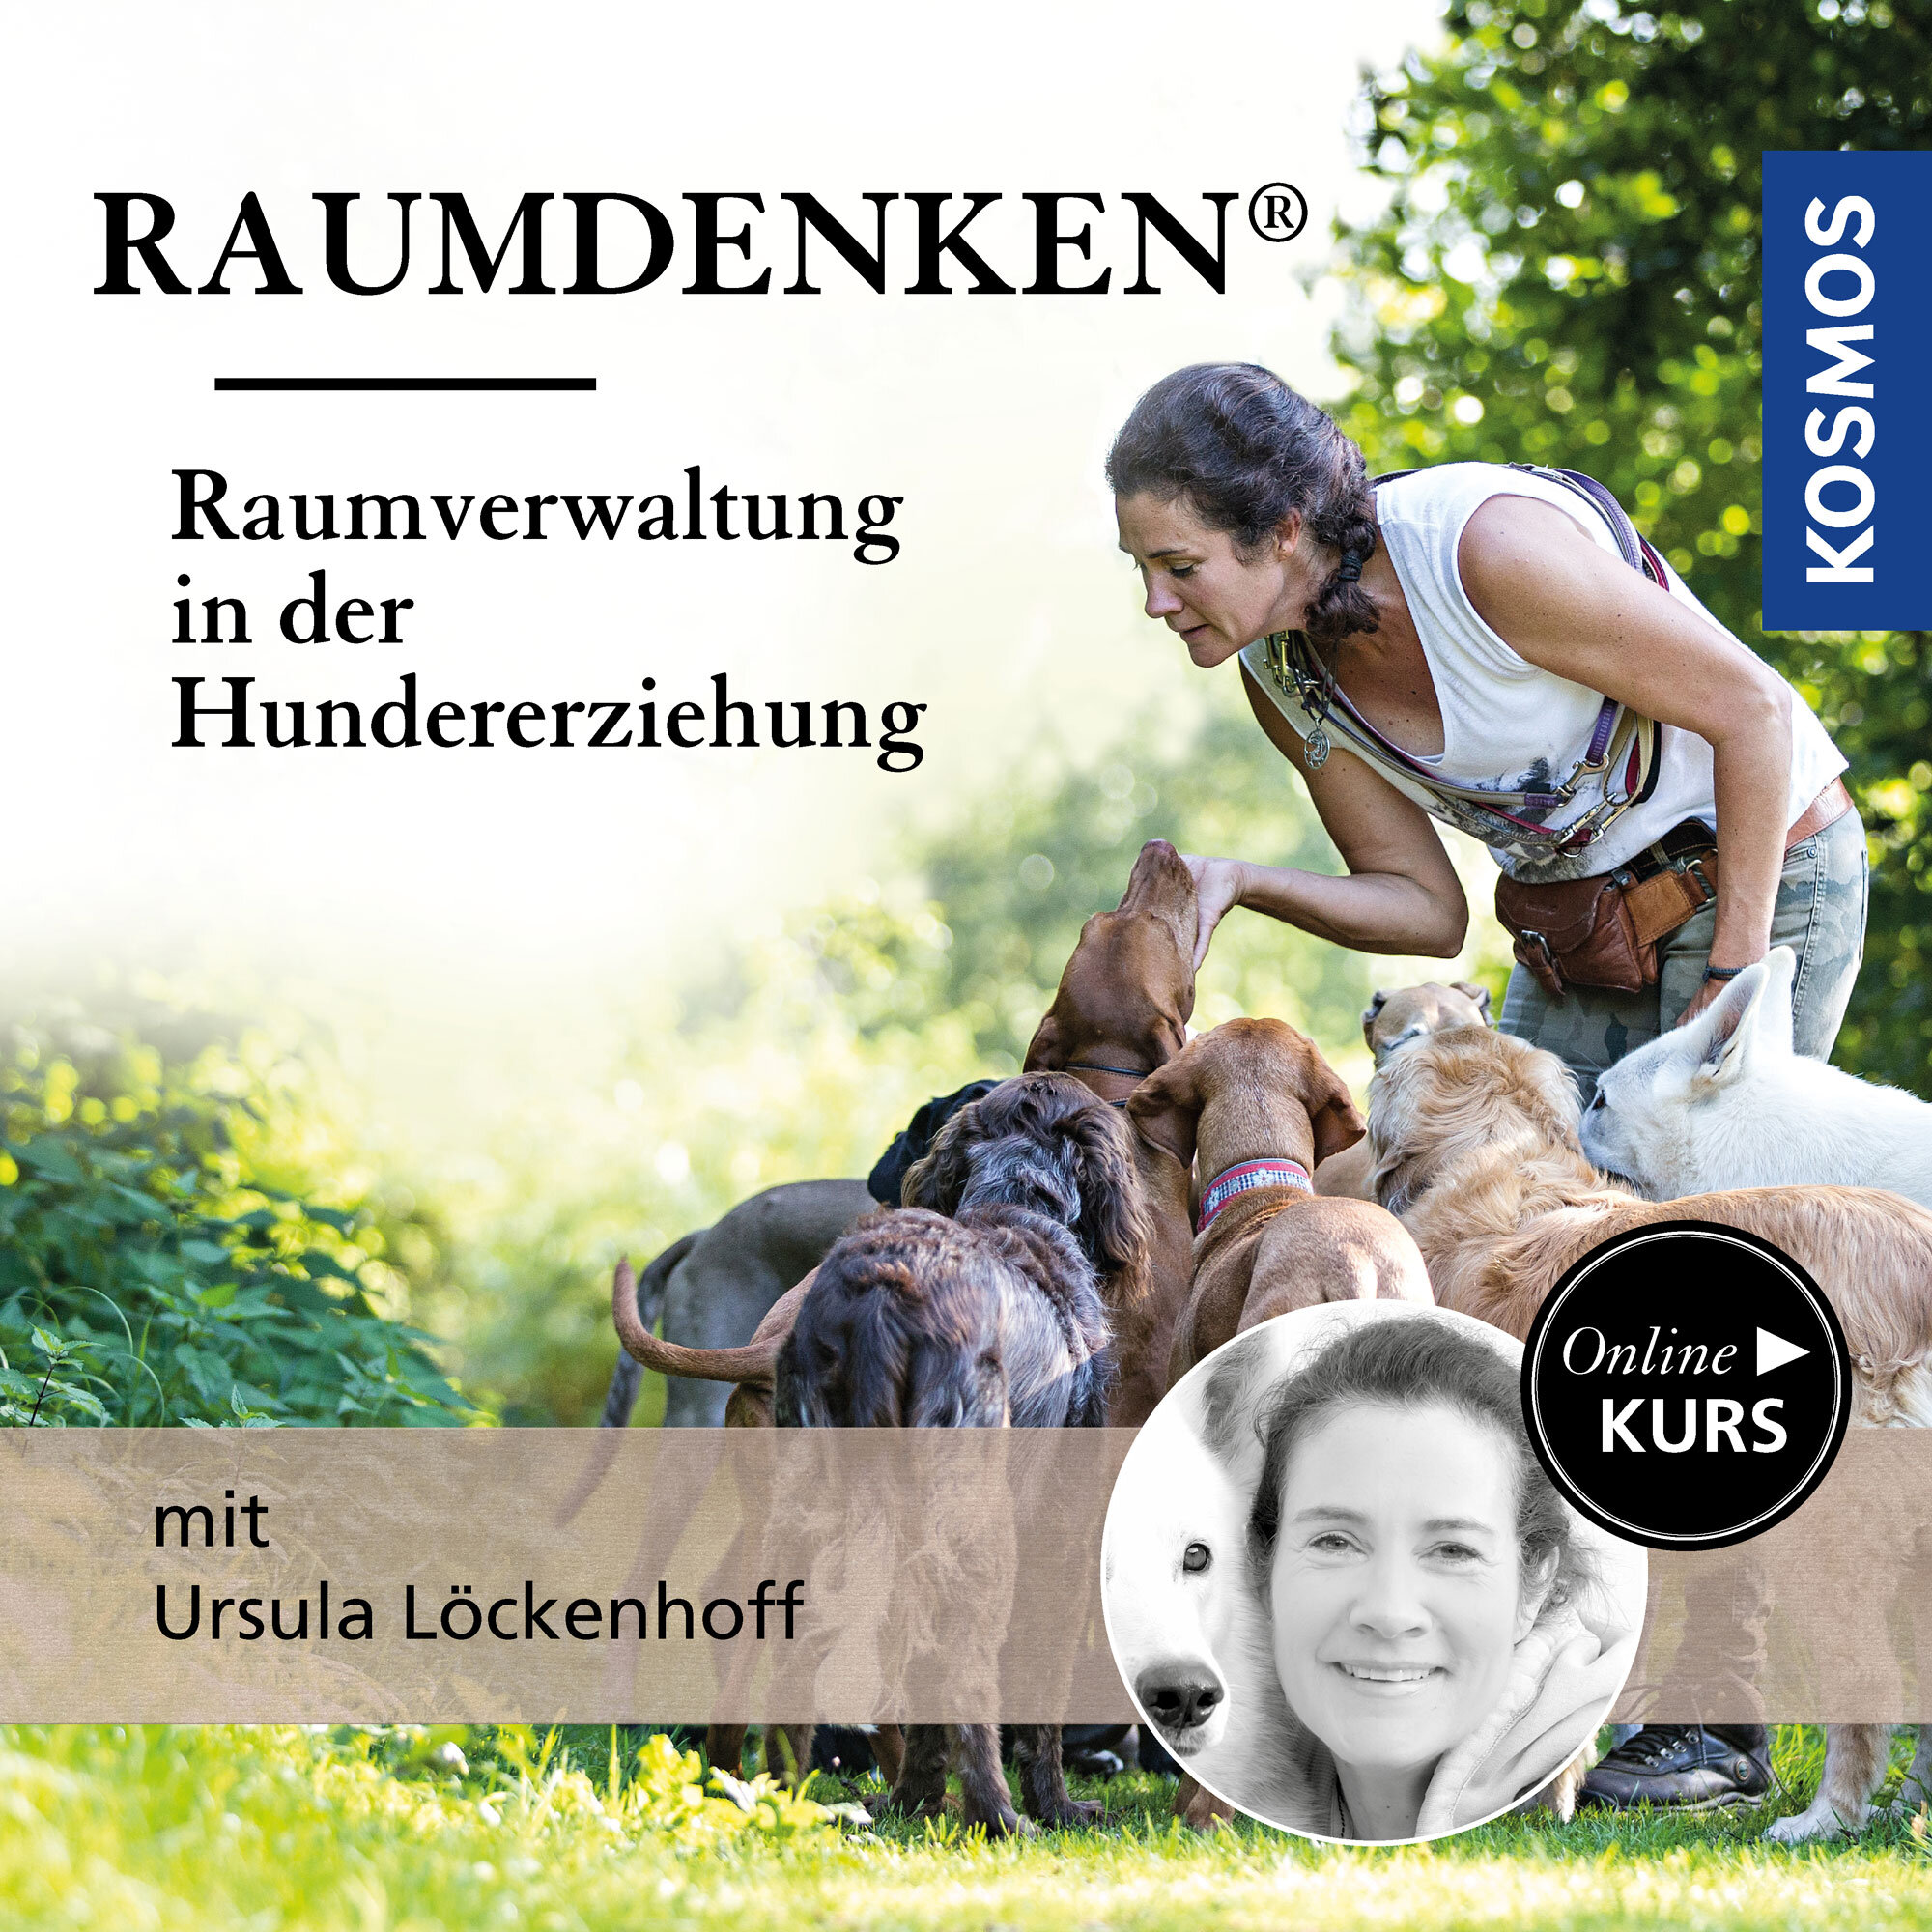 Raumdenken® – Raumverwaltung in der Hundeerziehung mit Ursula Löckenhoff